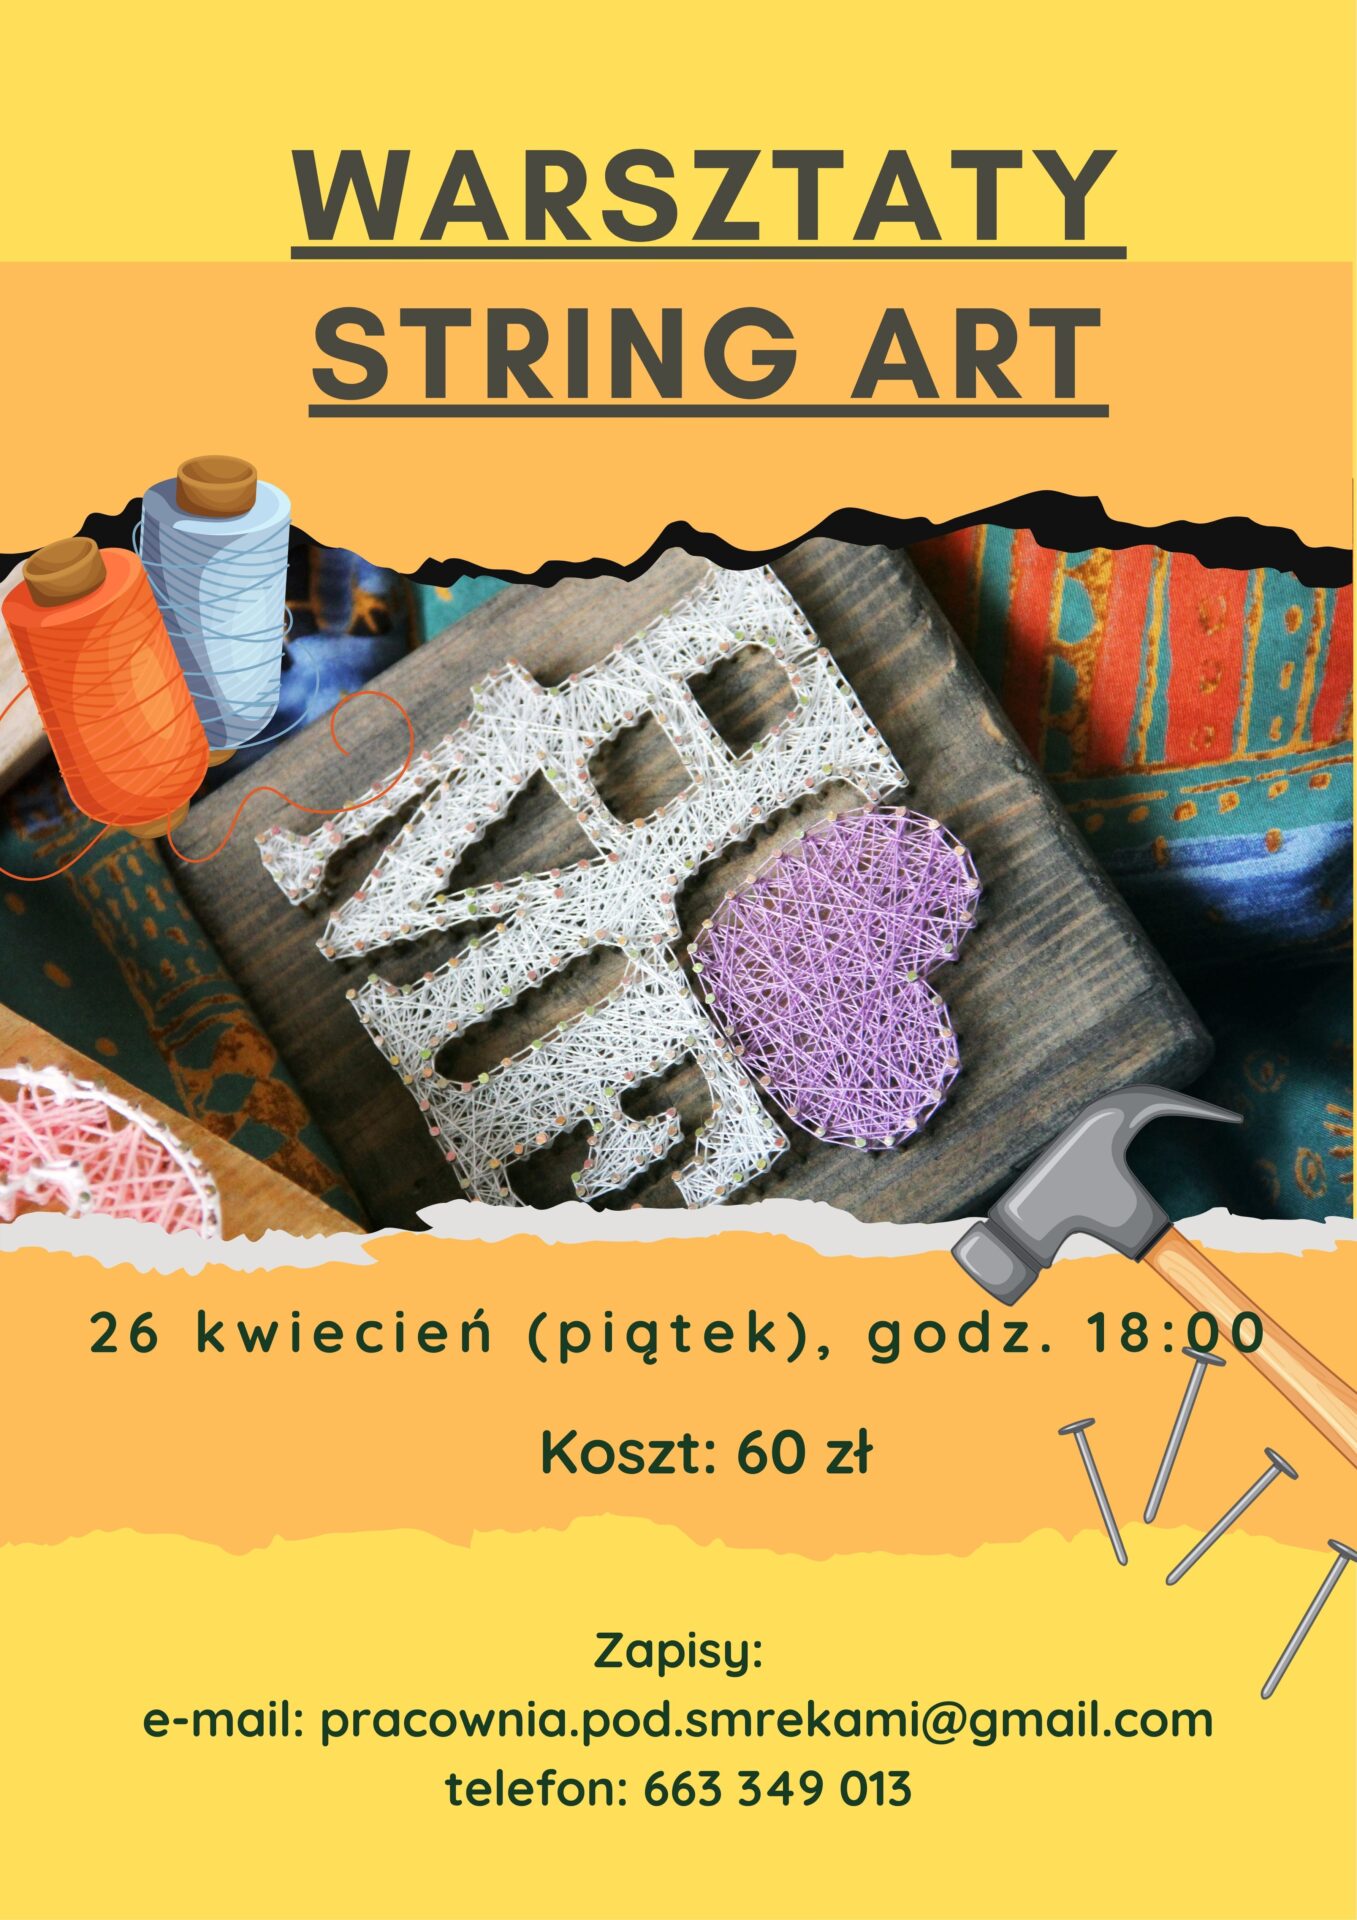 Warsztaty tworzenia obrazów w technice String Art w Kulturalnej Strefie Kobiet